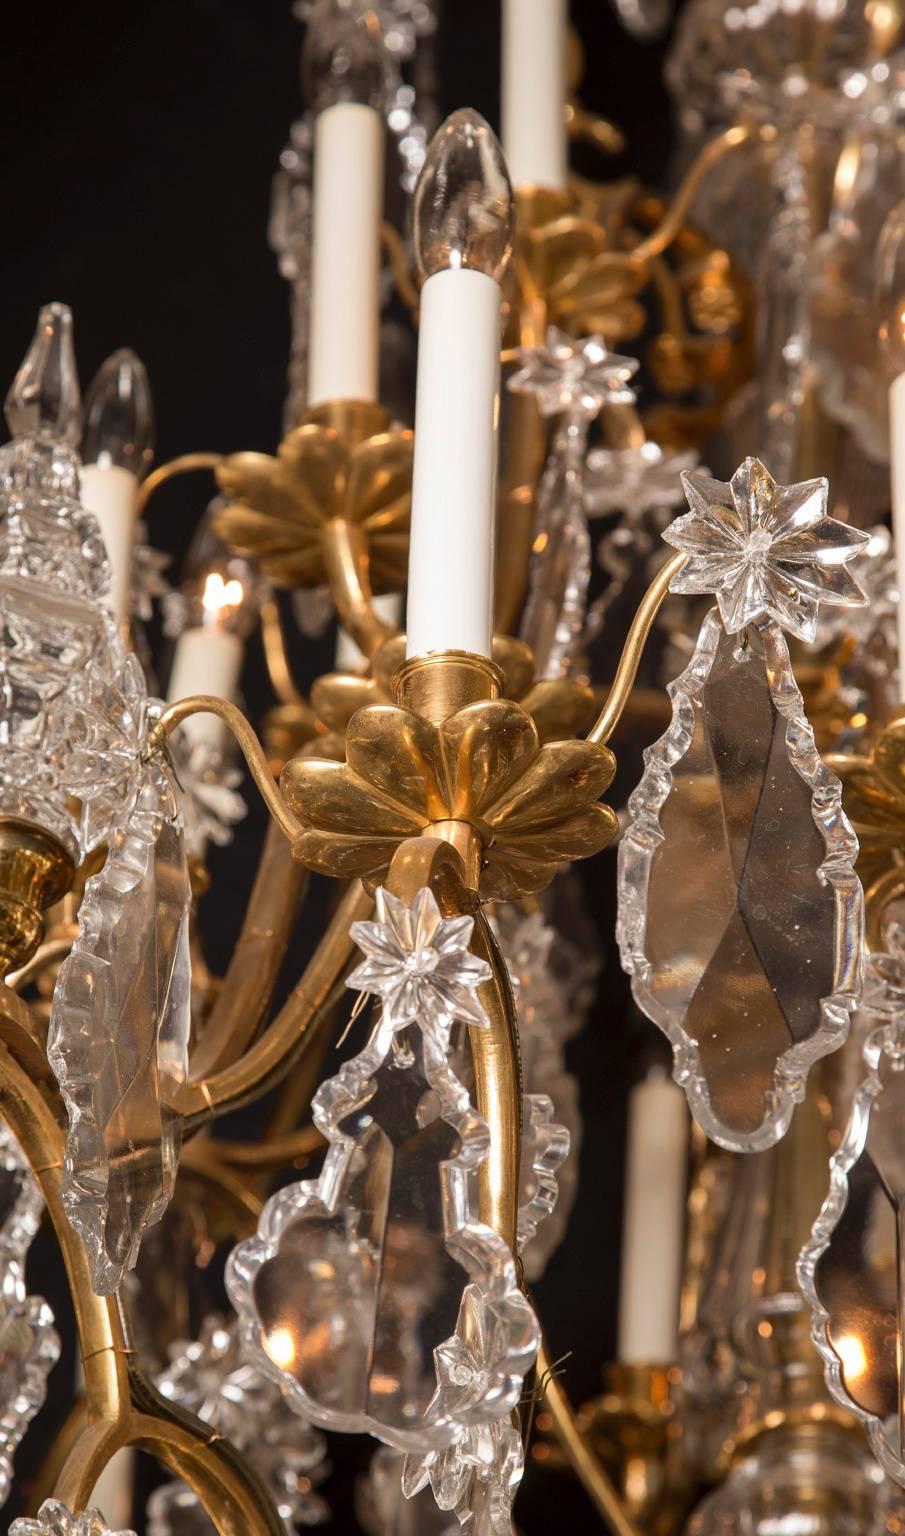 Dieser mehrstöckige französische Louis-XV-Kronleuchter ist aus schöner Erzbronze gefertigt und stammt aus dem 19. Das Stück verfügt über 45 Lichter und ist mit einer Fülle von Kristallen verziert: große Plaketten in verschiedenen Formen, oft mit